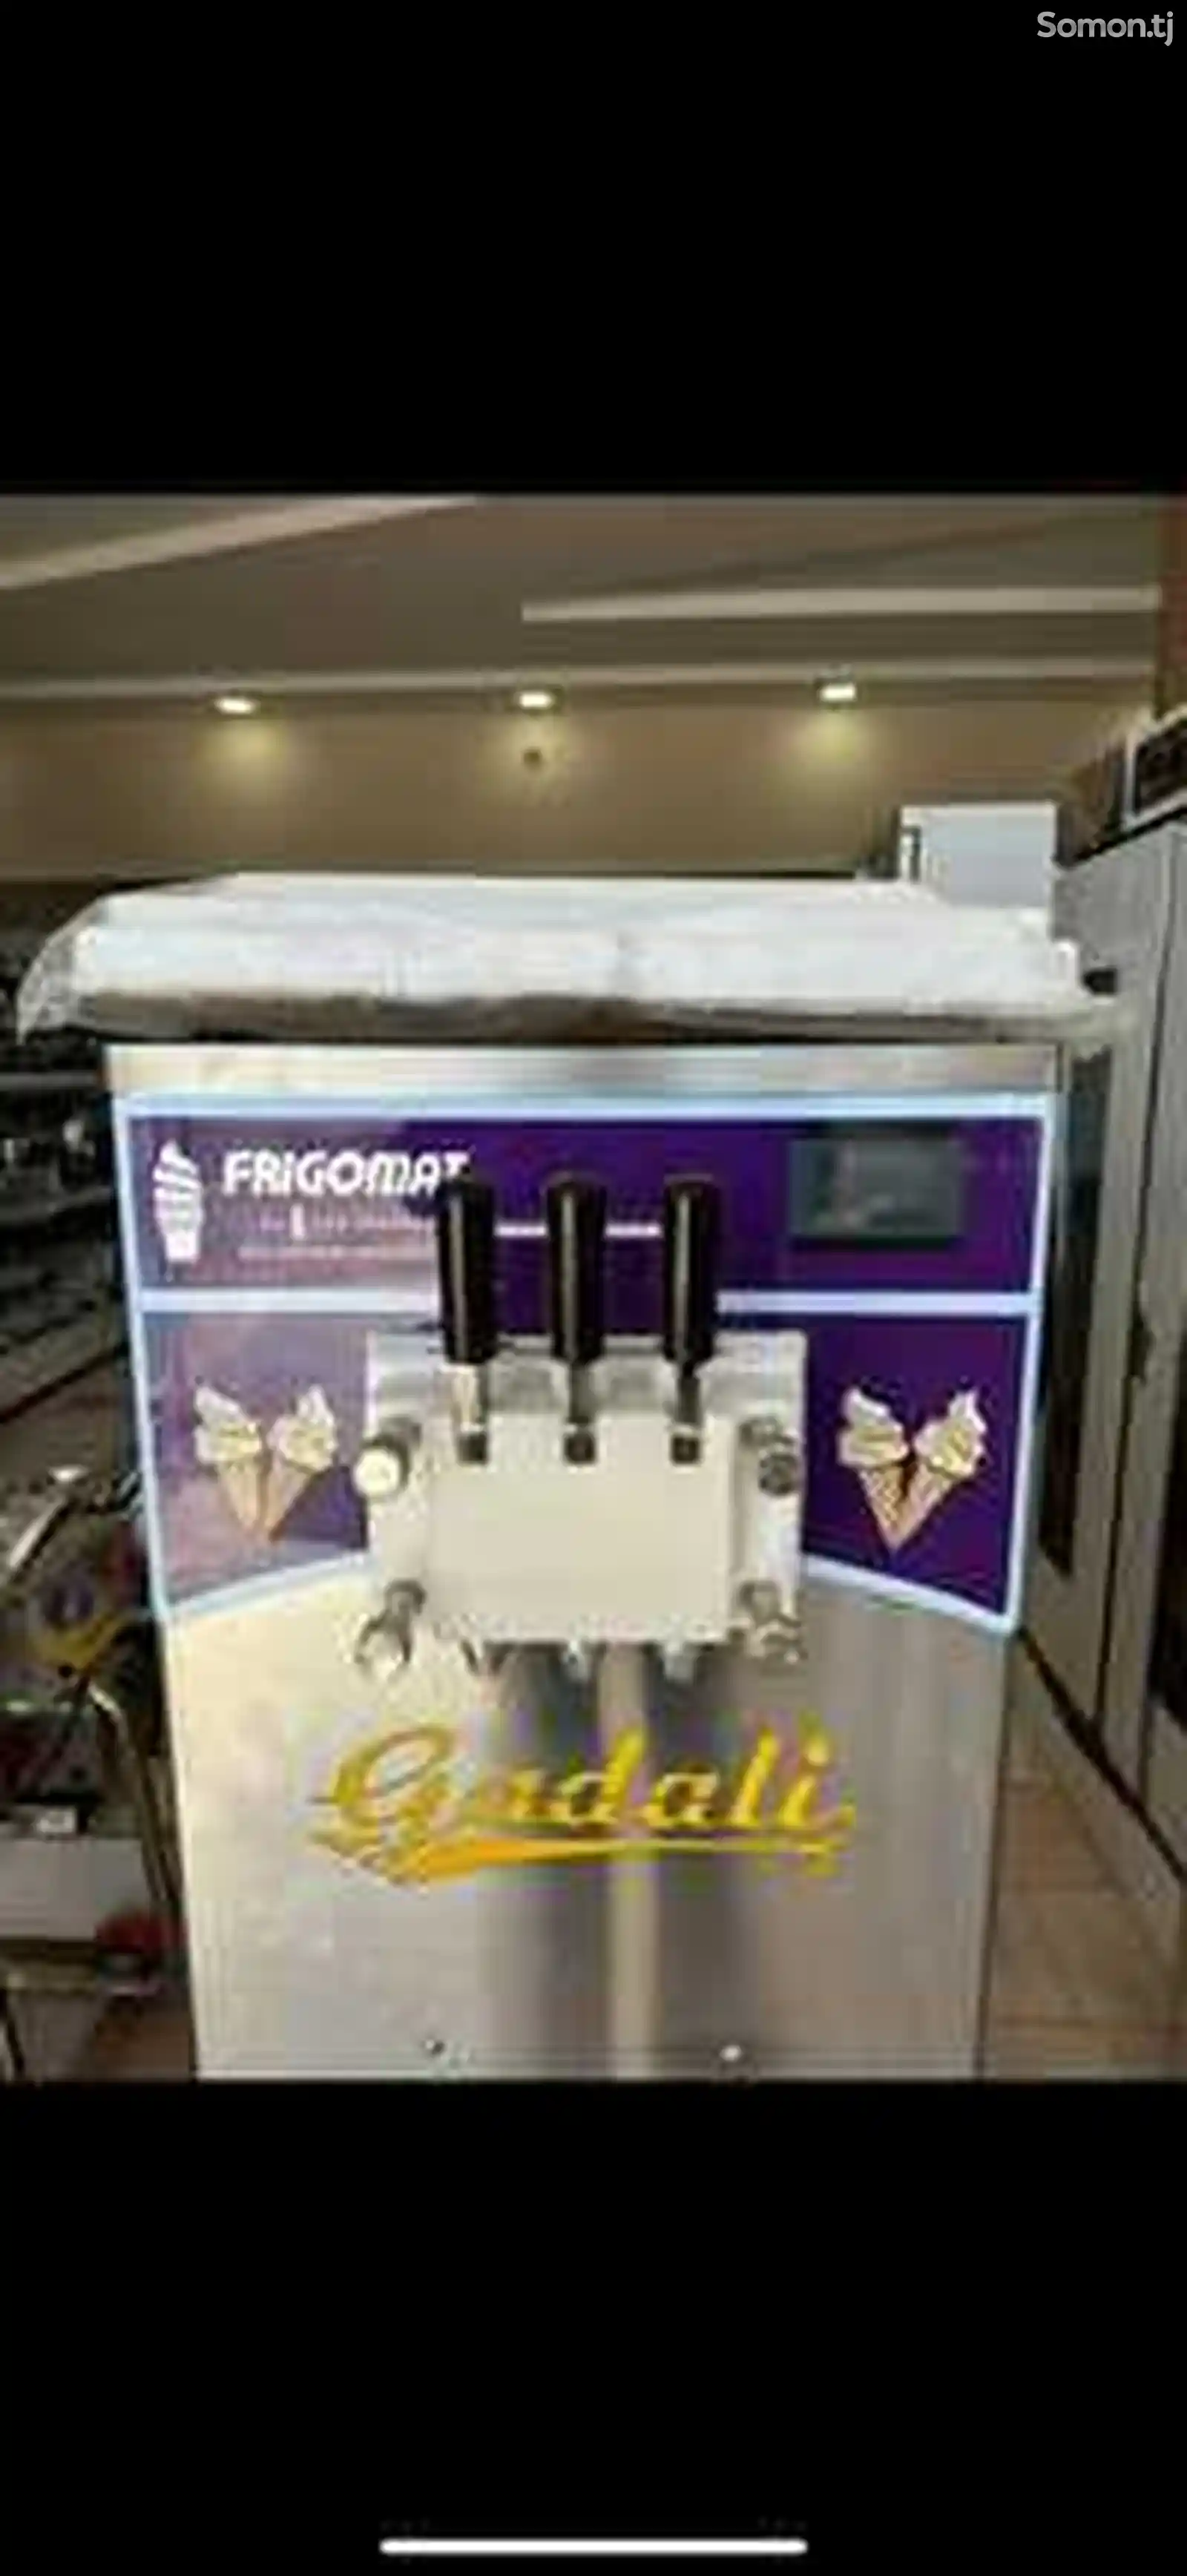 Аппарат для мороженого Gadalu 380 w 2024-1